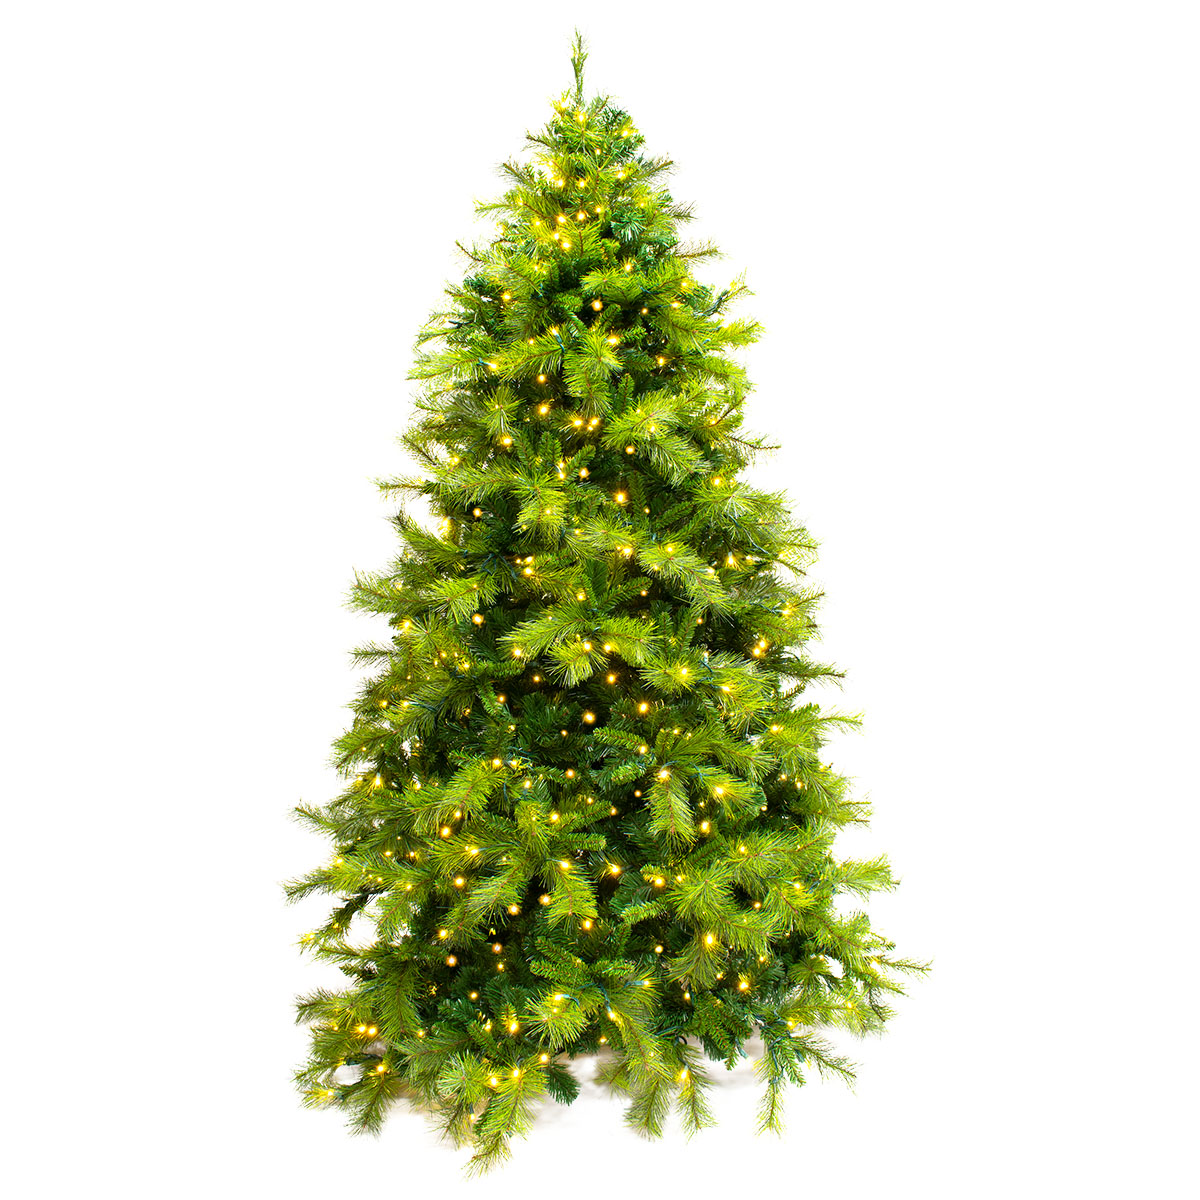 Mixed Pine Christmas Tree - Warm White LED Lights - One-Plug Pole - 12ft Tall